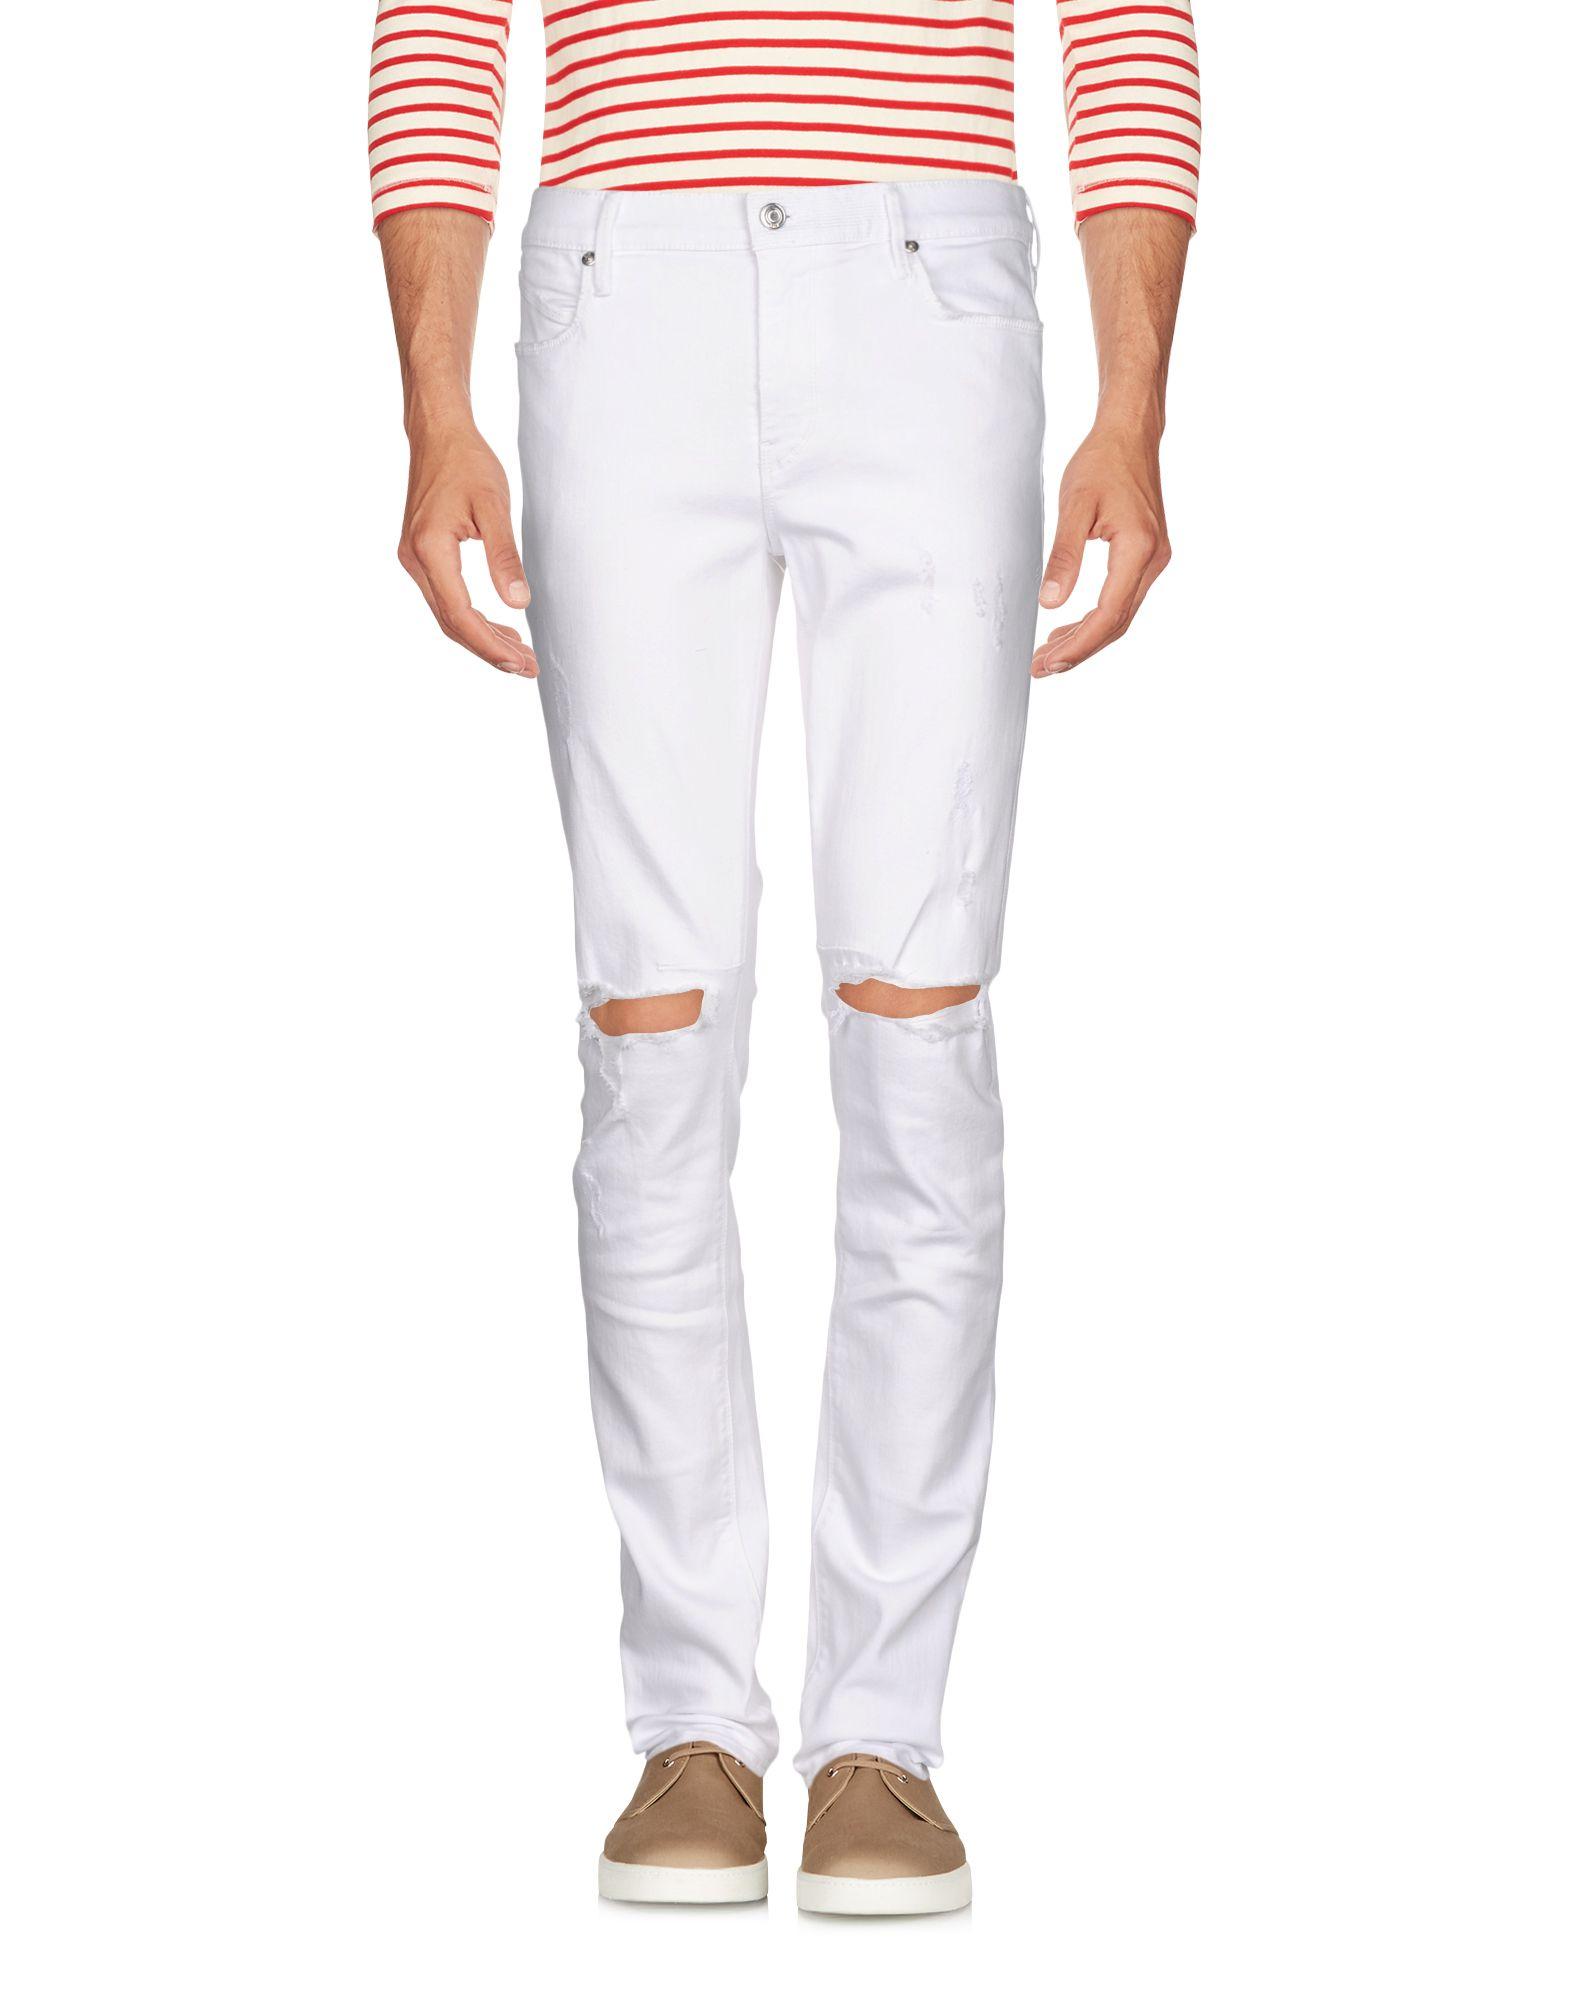 RTA Denim Pants in White for Men - Lyst